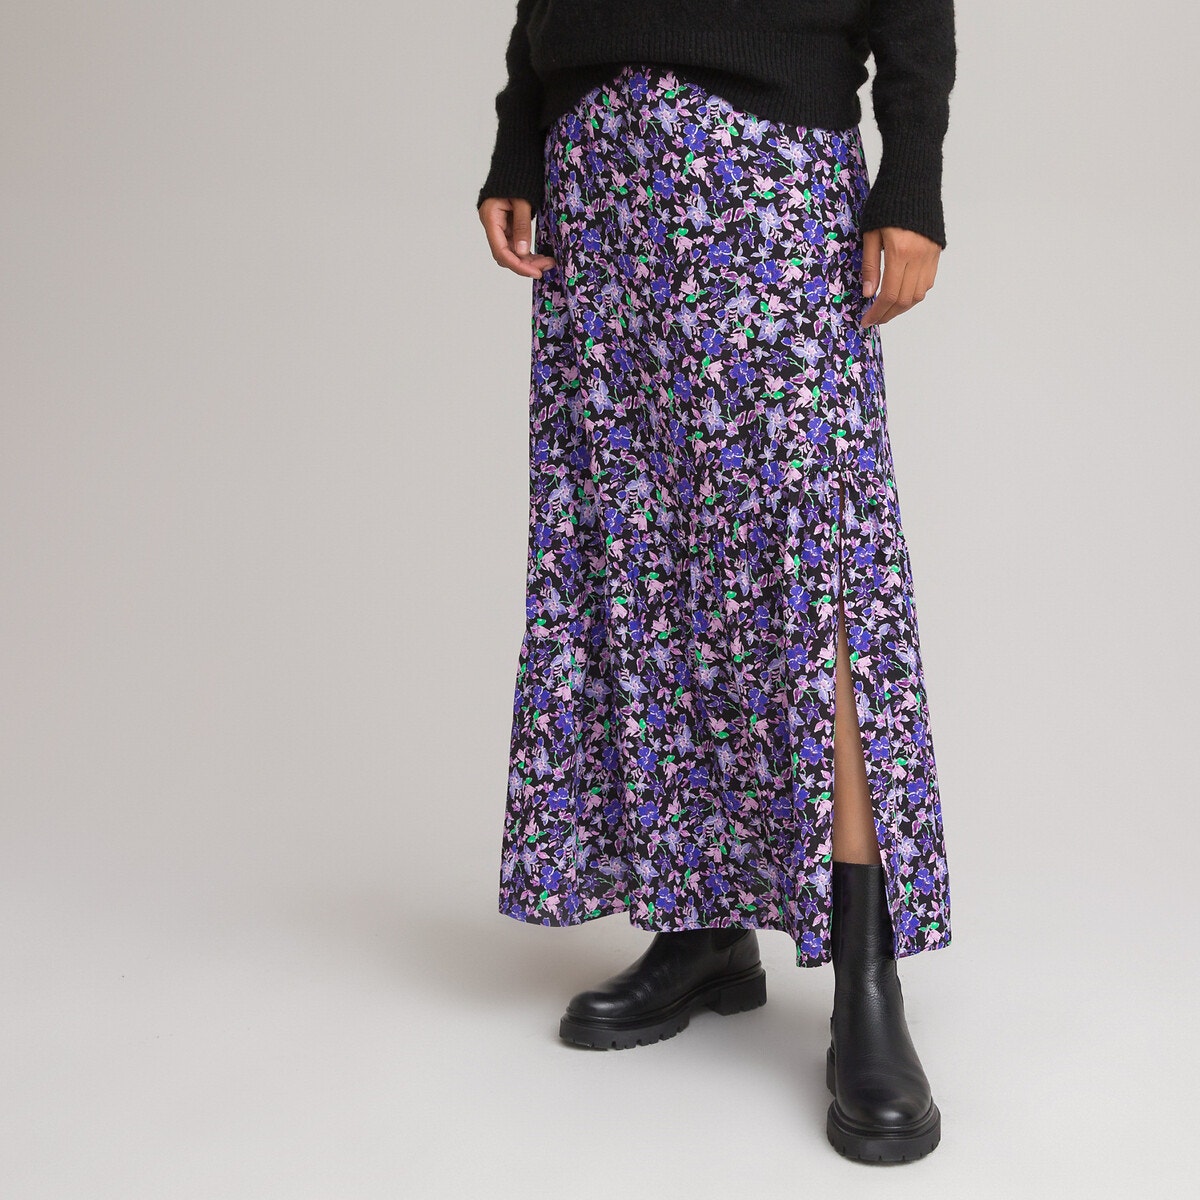 Μακρά ζακάρ φούστα με φλοράλ μοτίβο